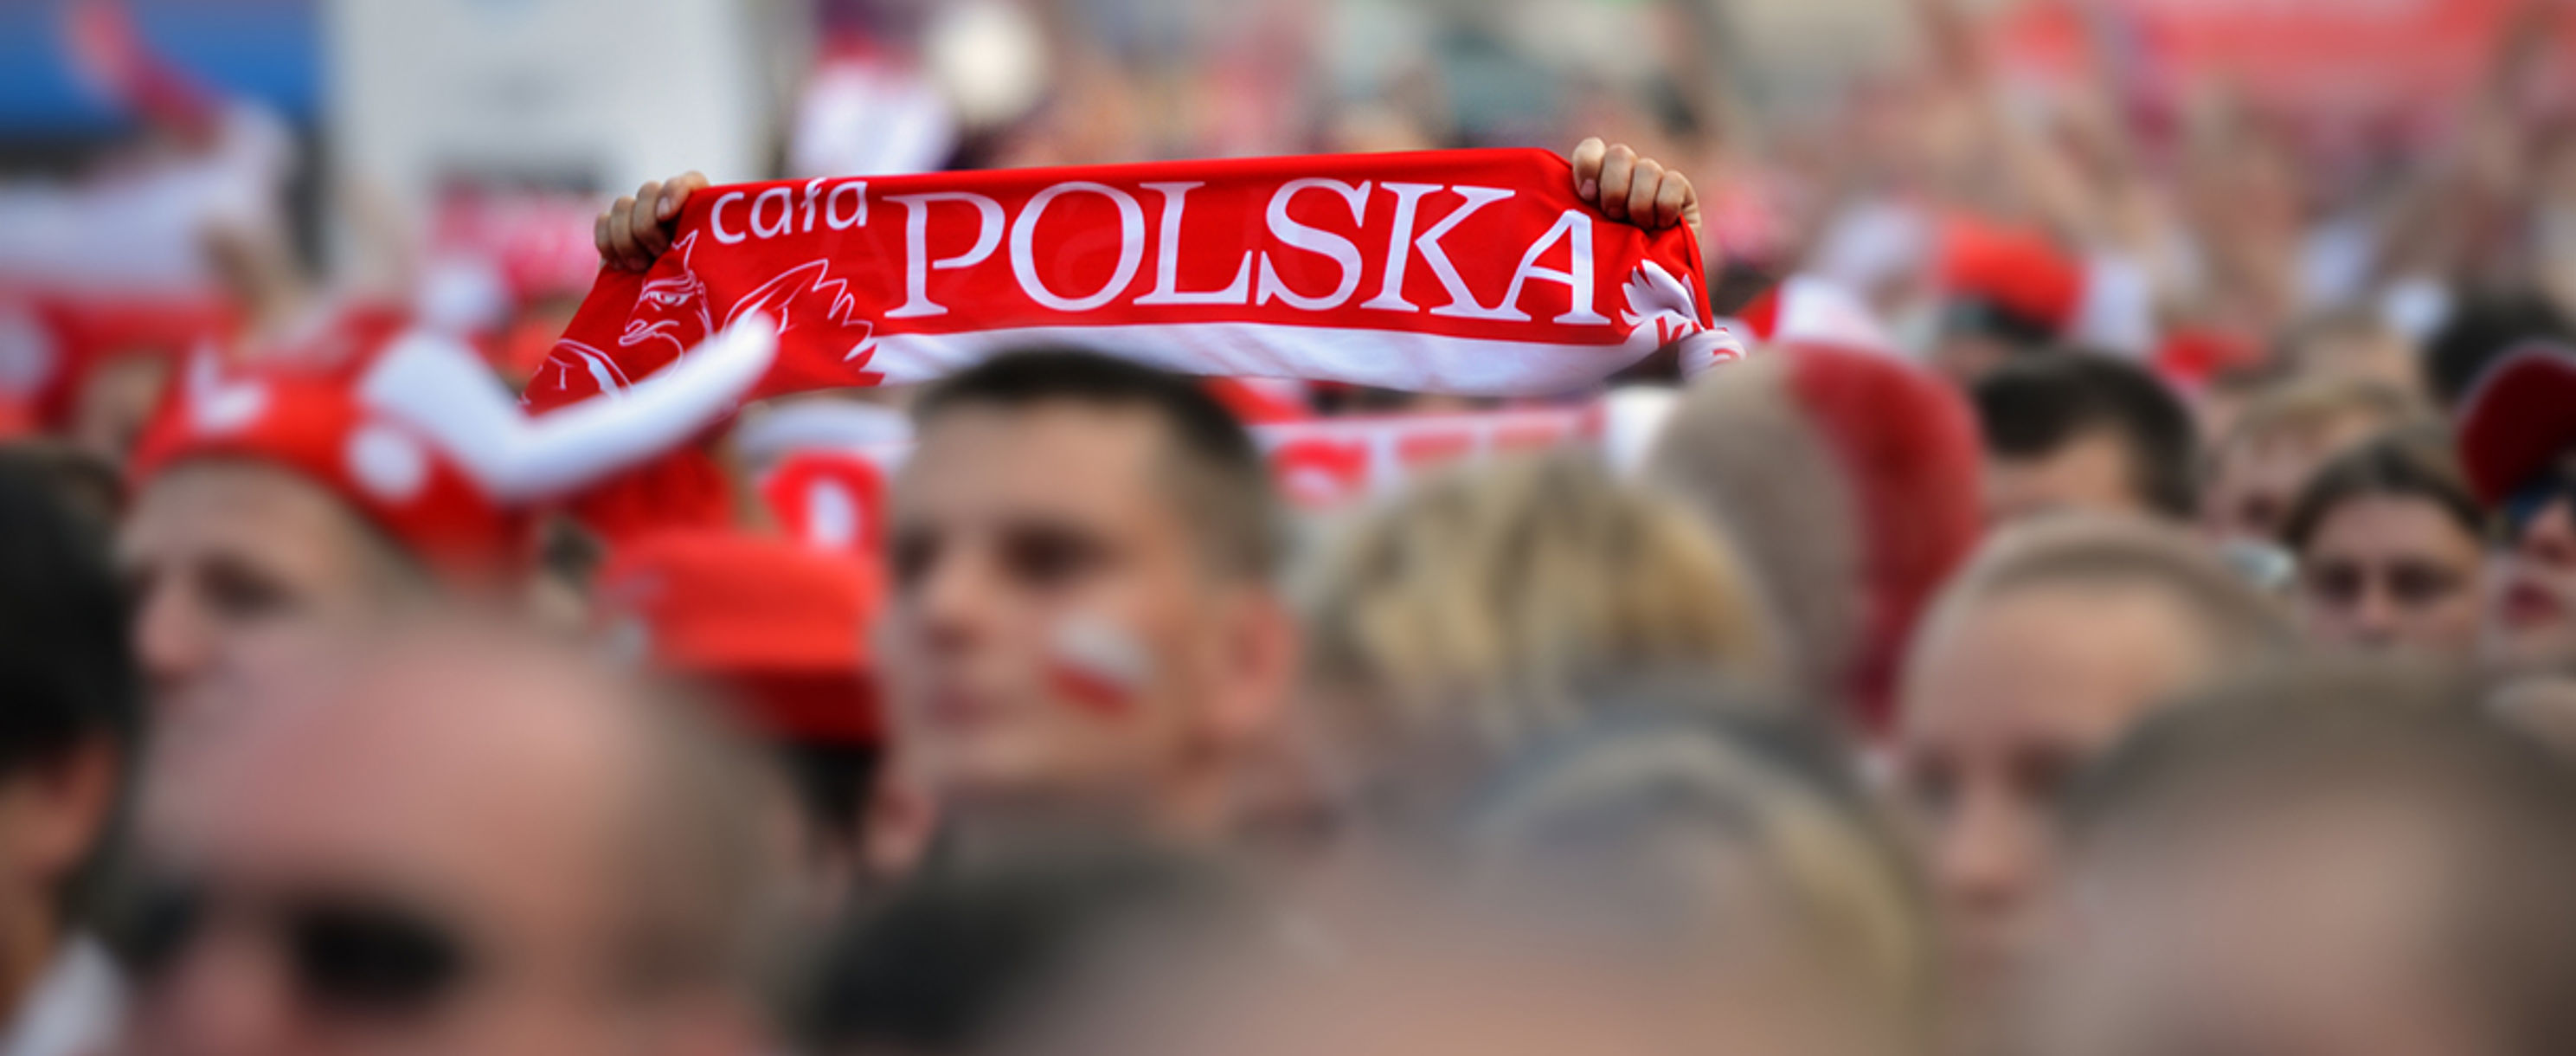 Der FC Polonia Berlin – ein polnisches Fußballteam in Deutschland